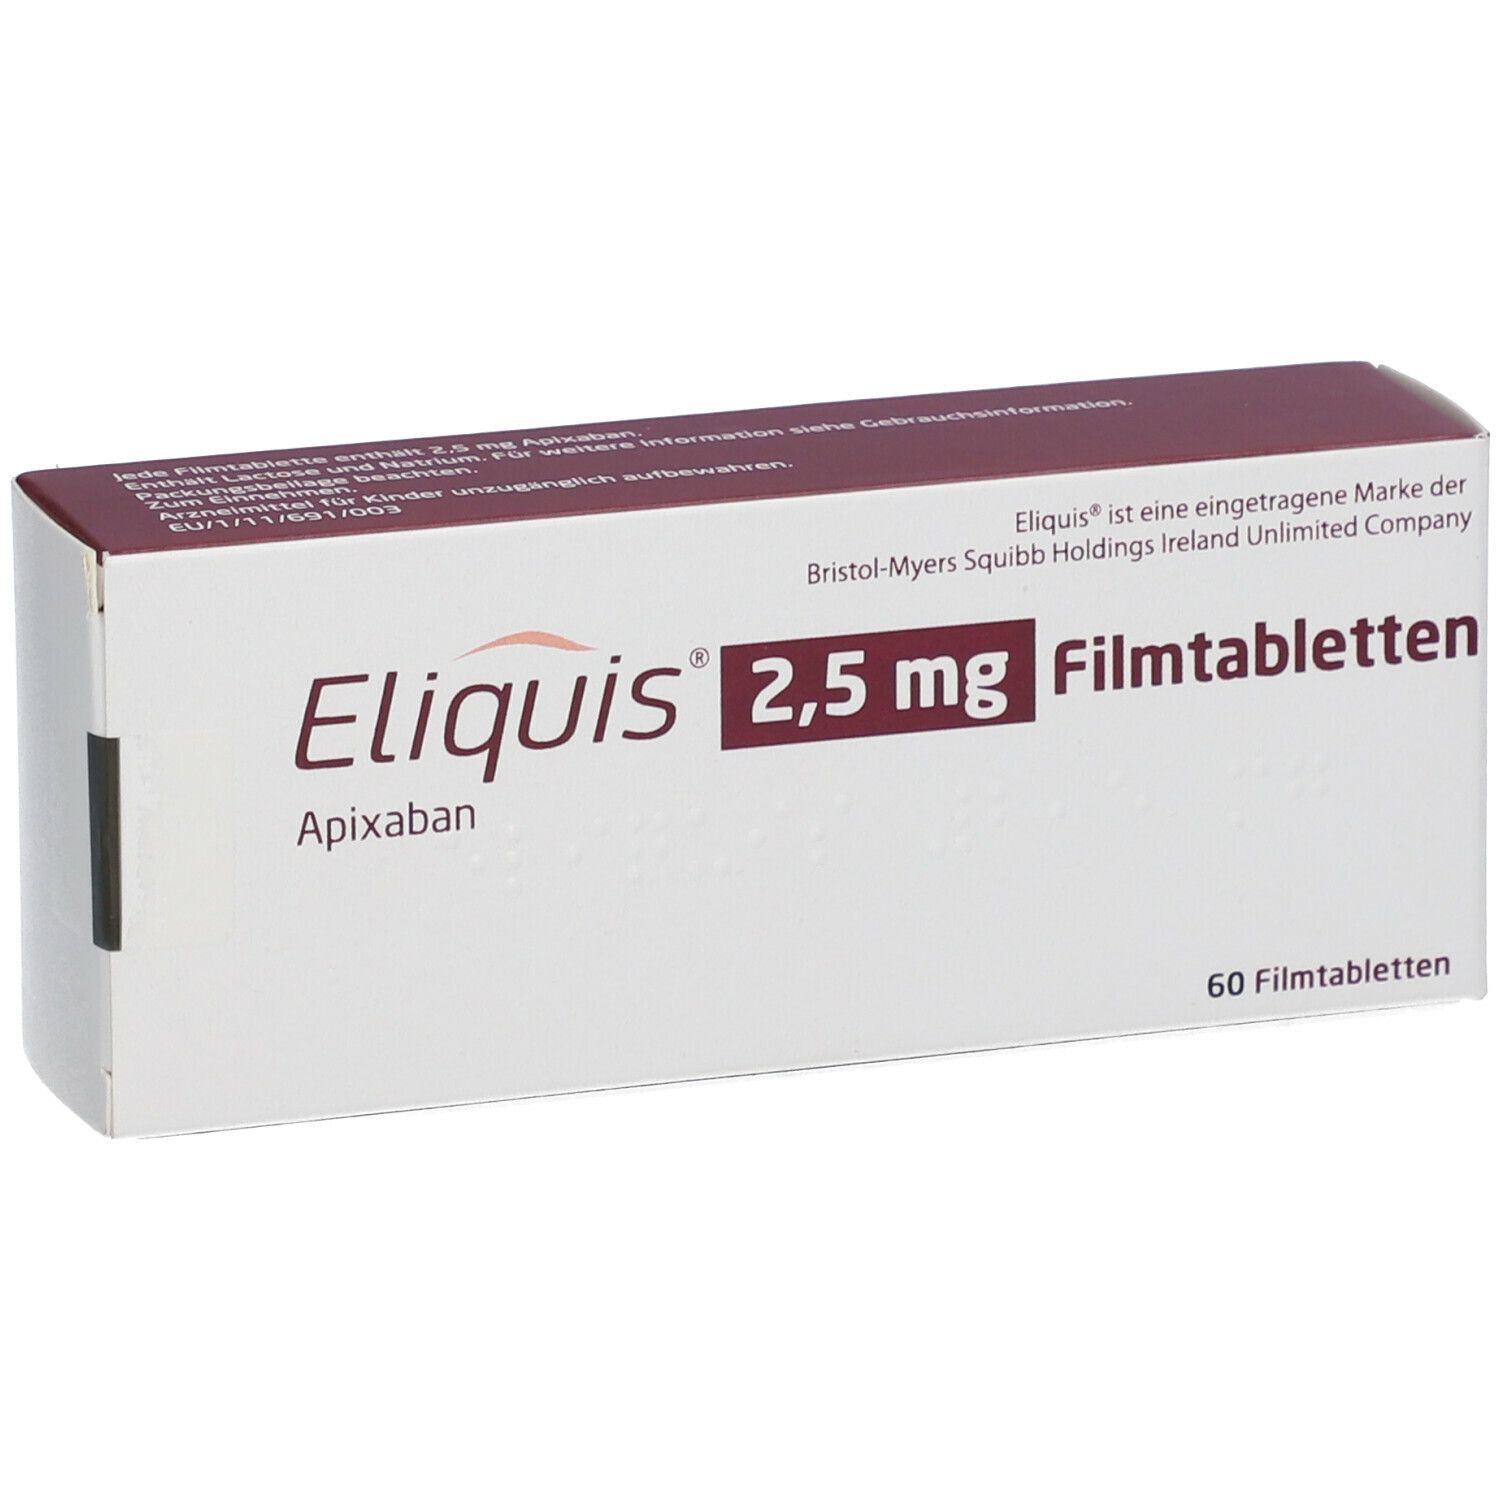 ELIQUIS 2,5 mg Filmtabletten